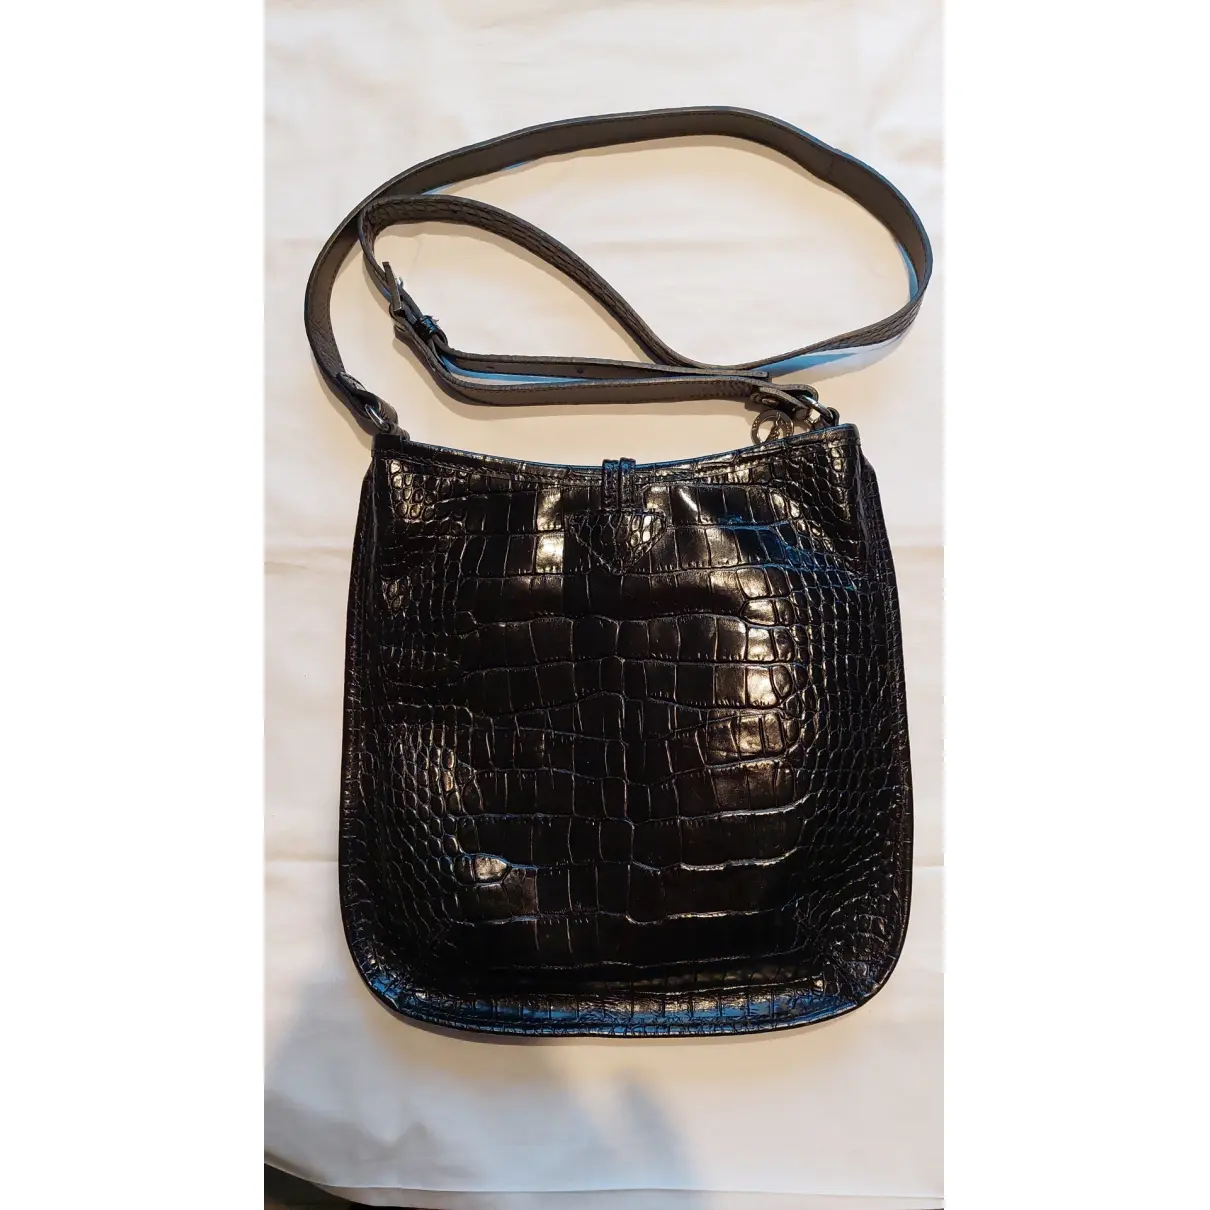 Buy Longchamp Balzane leather handbag online